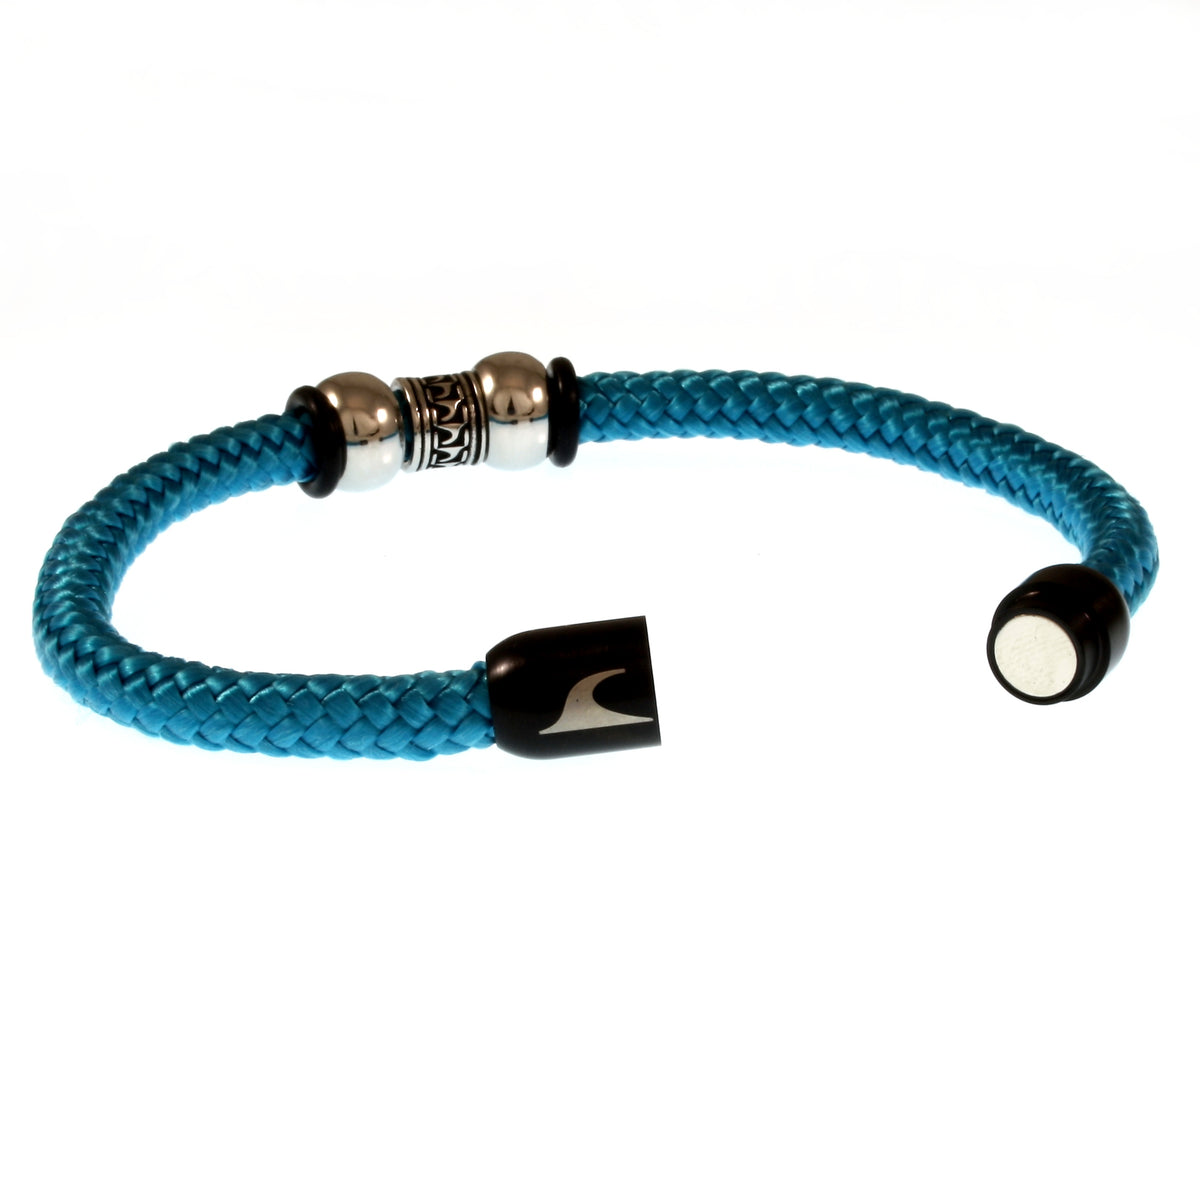 Herren-Segeltau-Armband-atoll-blau-schwarz-geflochten-Edelstahlverschluss-offen-wavepirate-shop-st